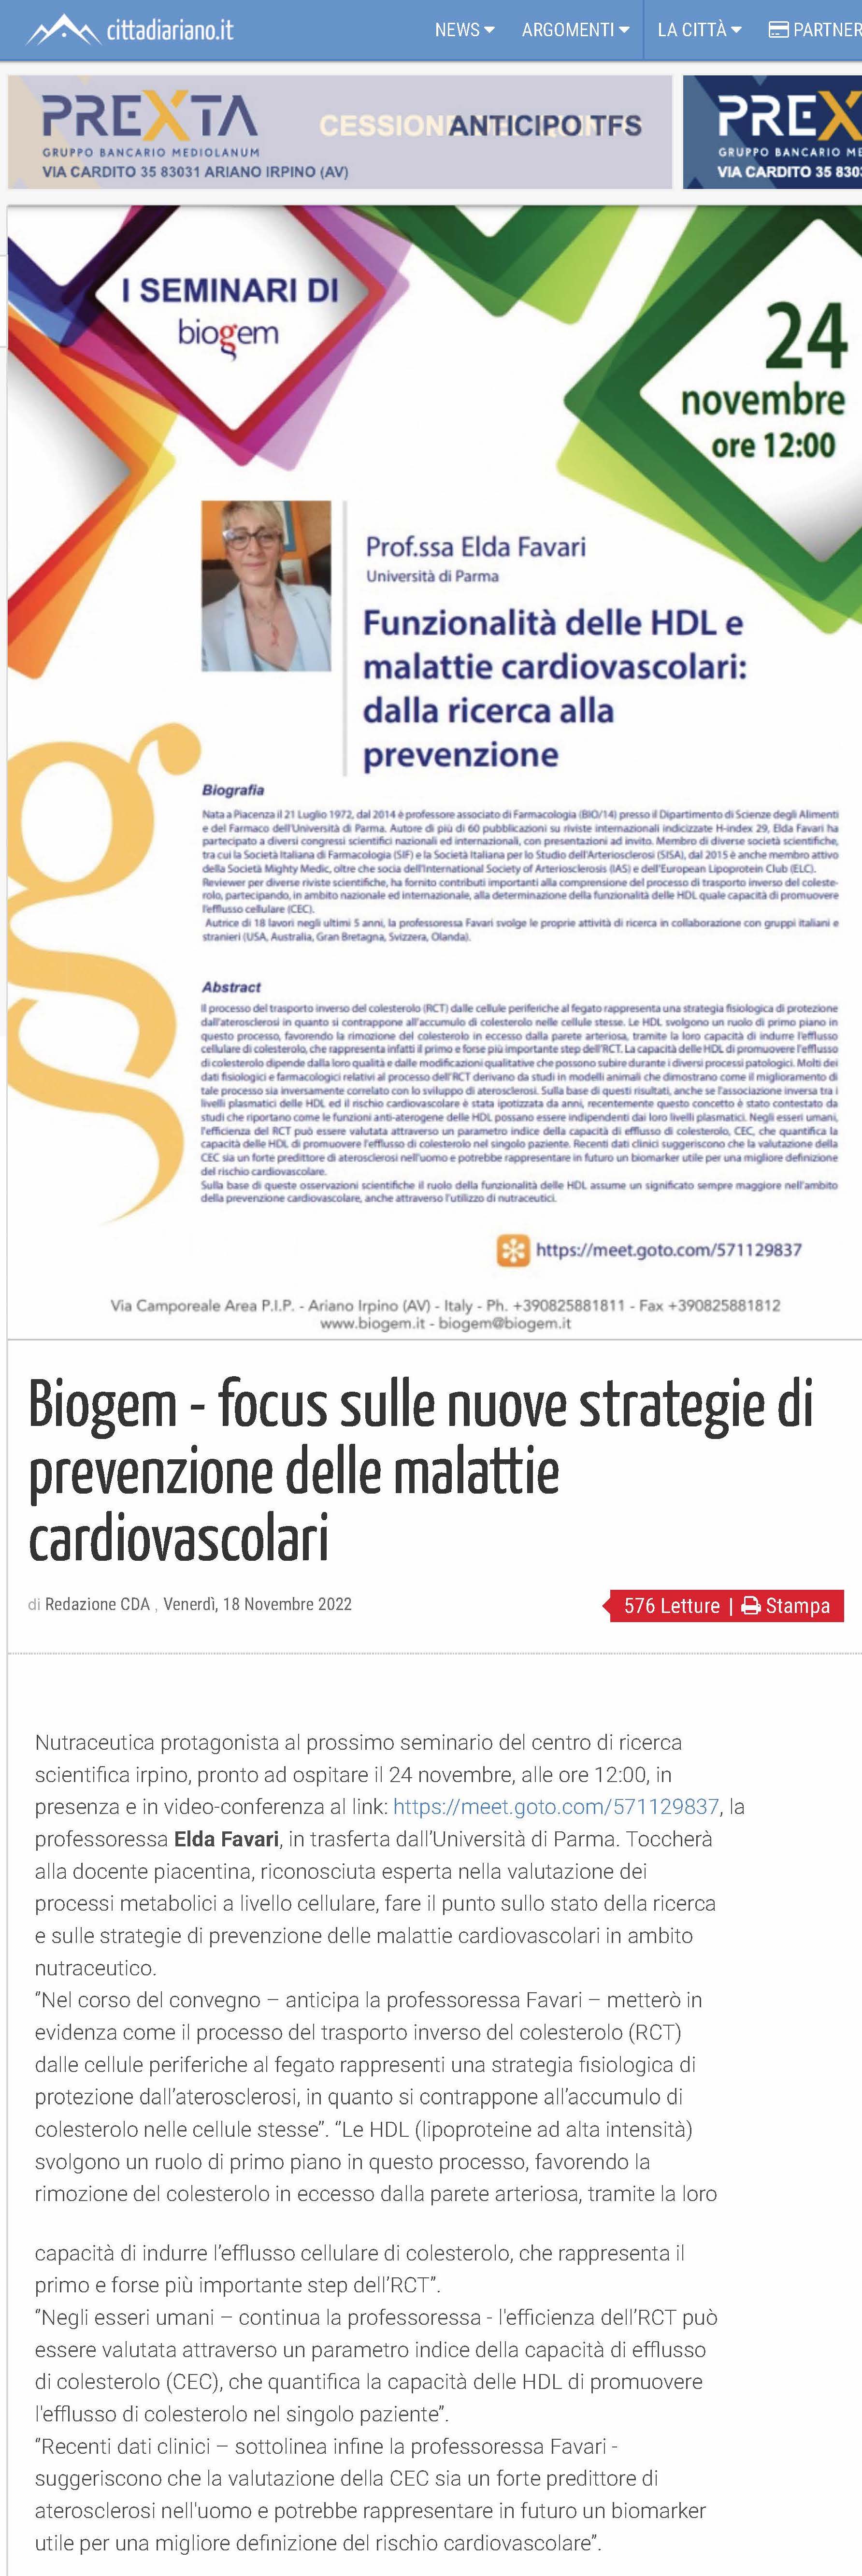 Biogem - focus sulle nuove strategie di prevenzione delle malattie cardiovascolari